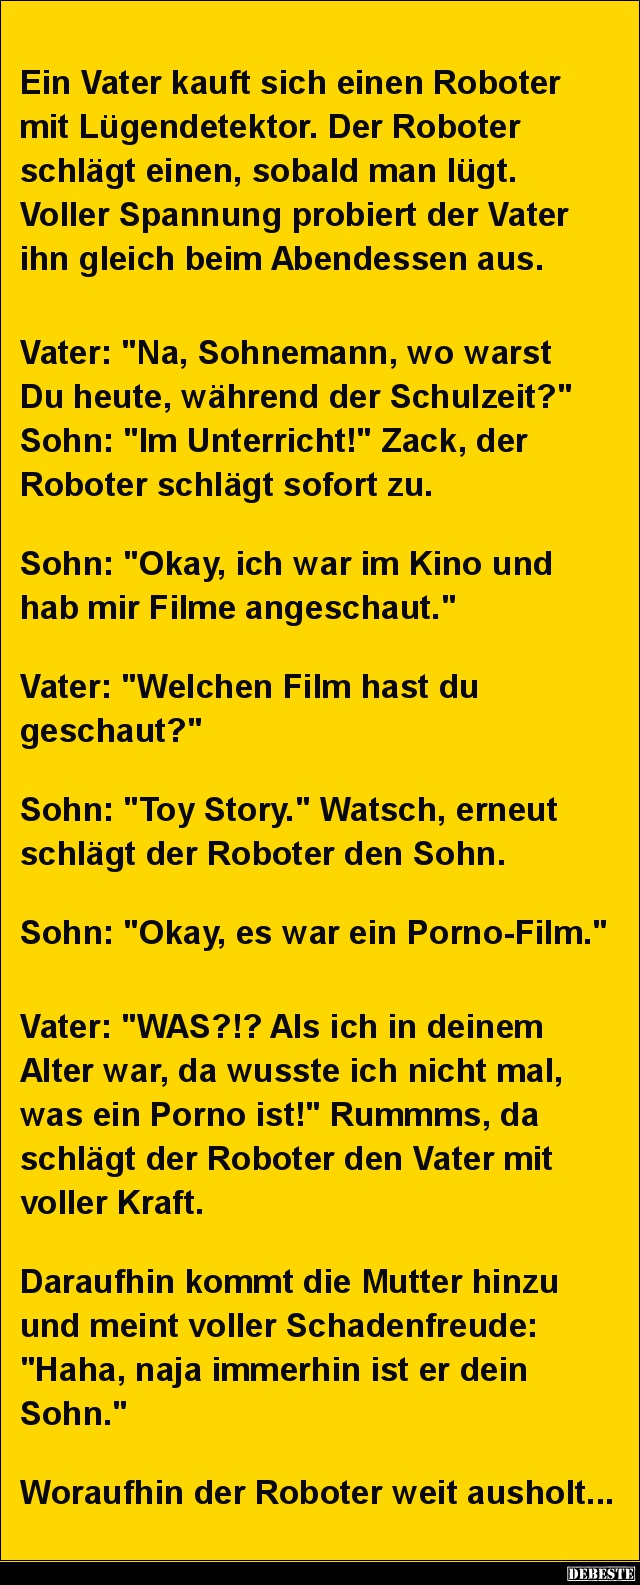 Ein Vater kauft sich einen Roboter mit Lügendetektor.. - Lustige Bilder | DEBESTE.de